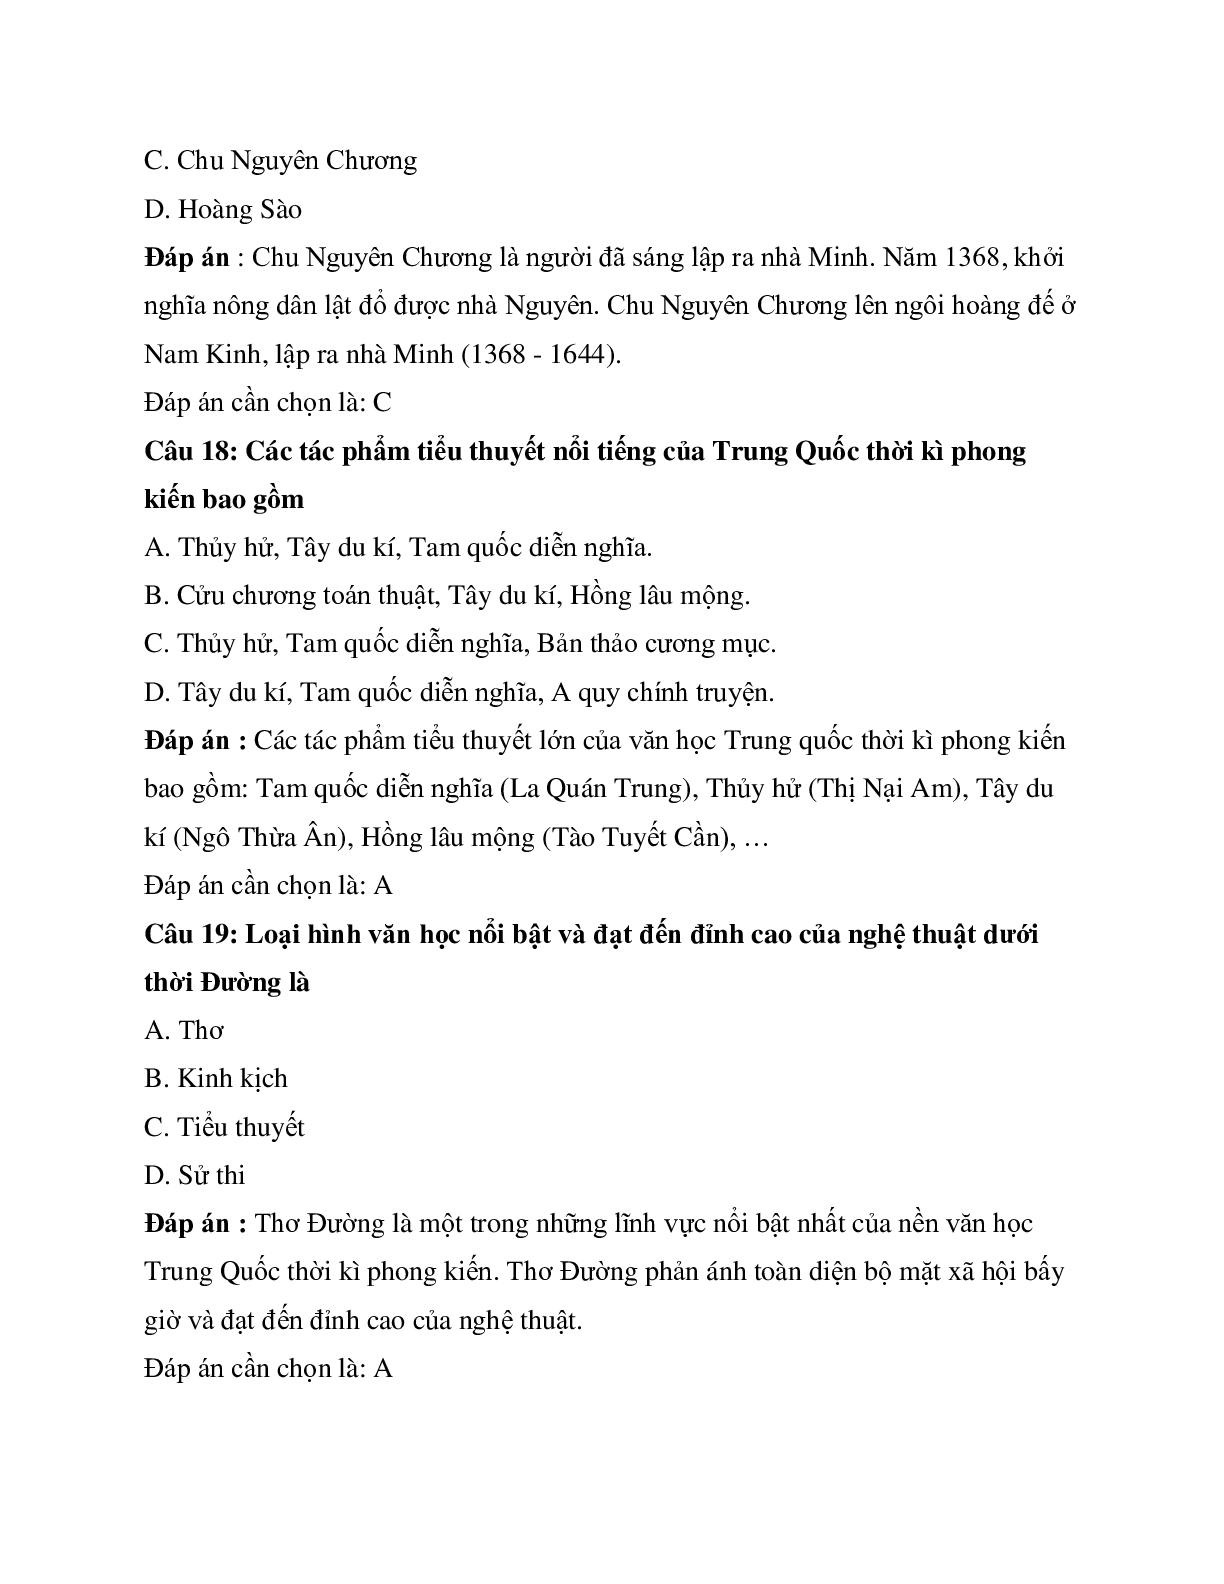 Trắc nghiệm Lịch sử 10 Bài 5 có đáp án: Trung Quốc thời phong kiến (trang 7)